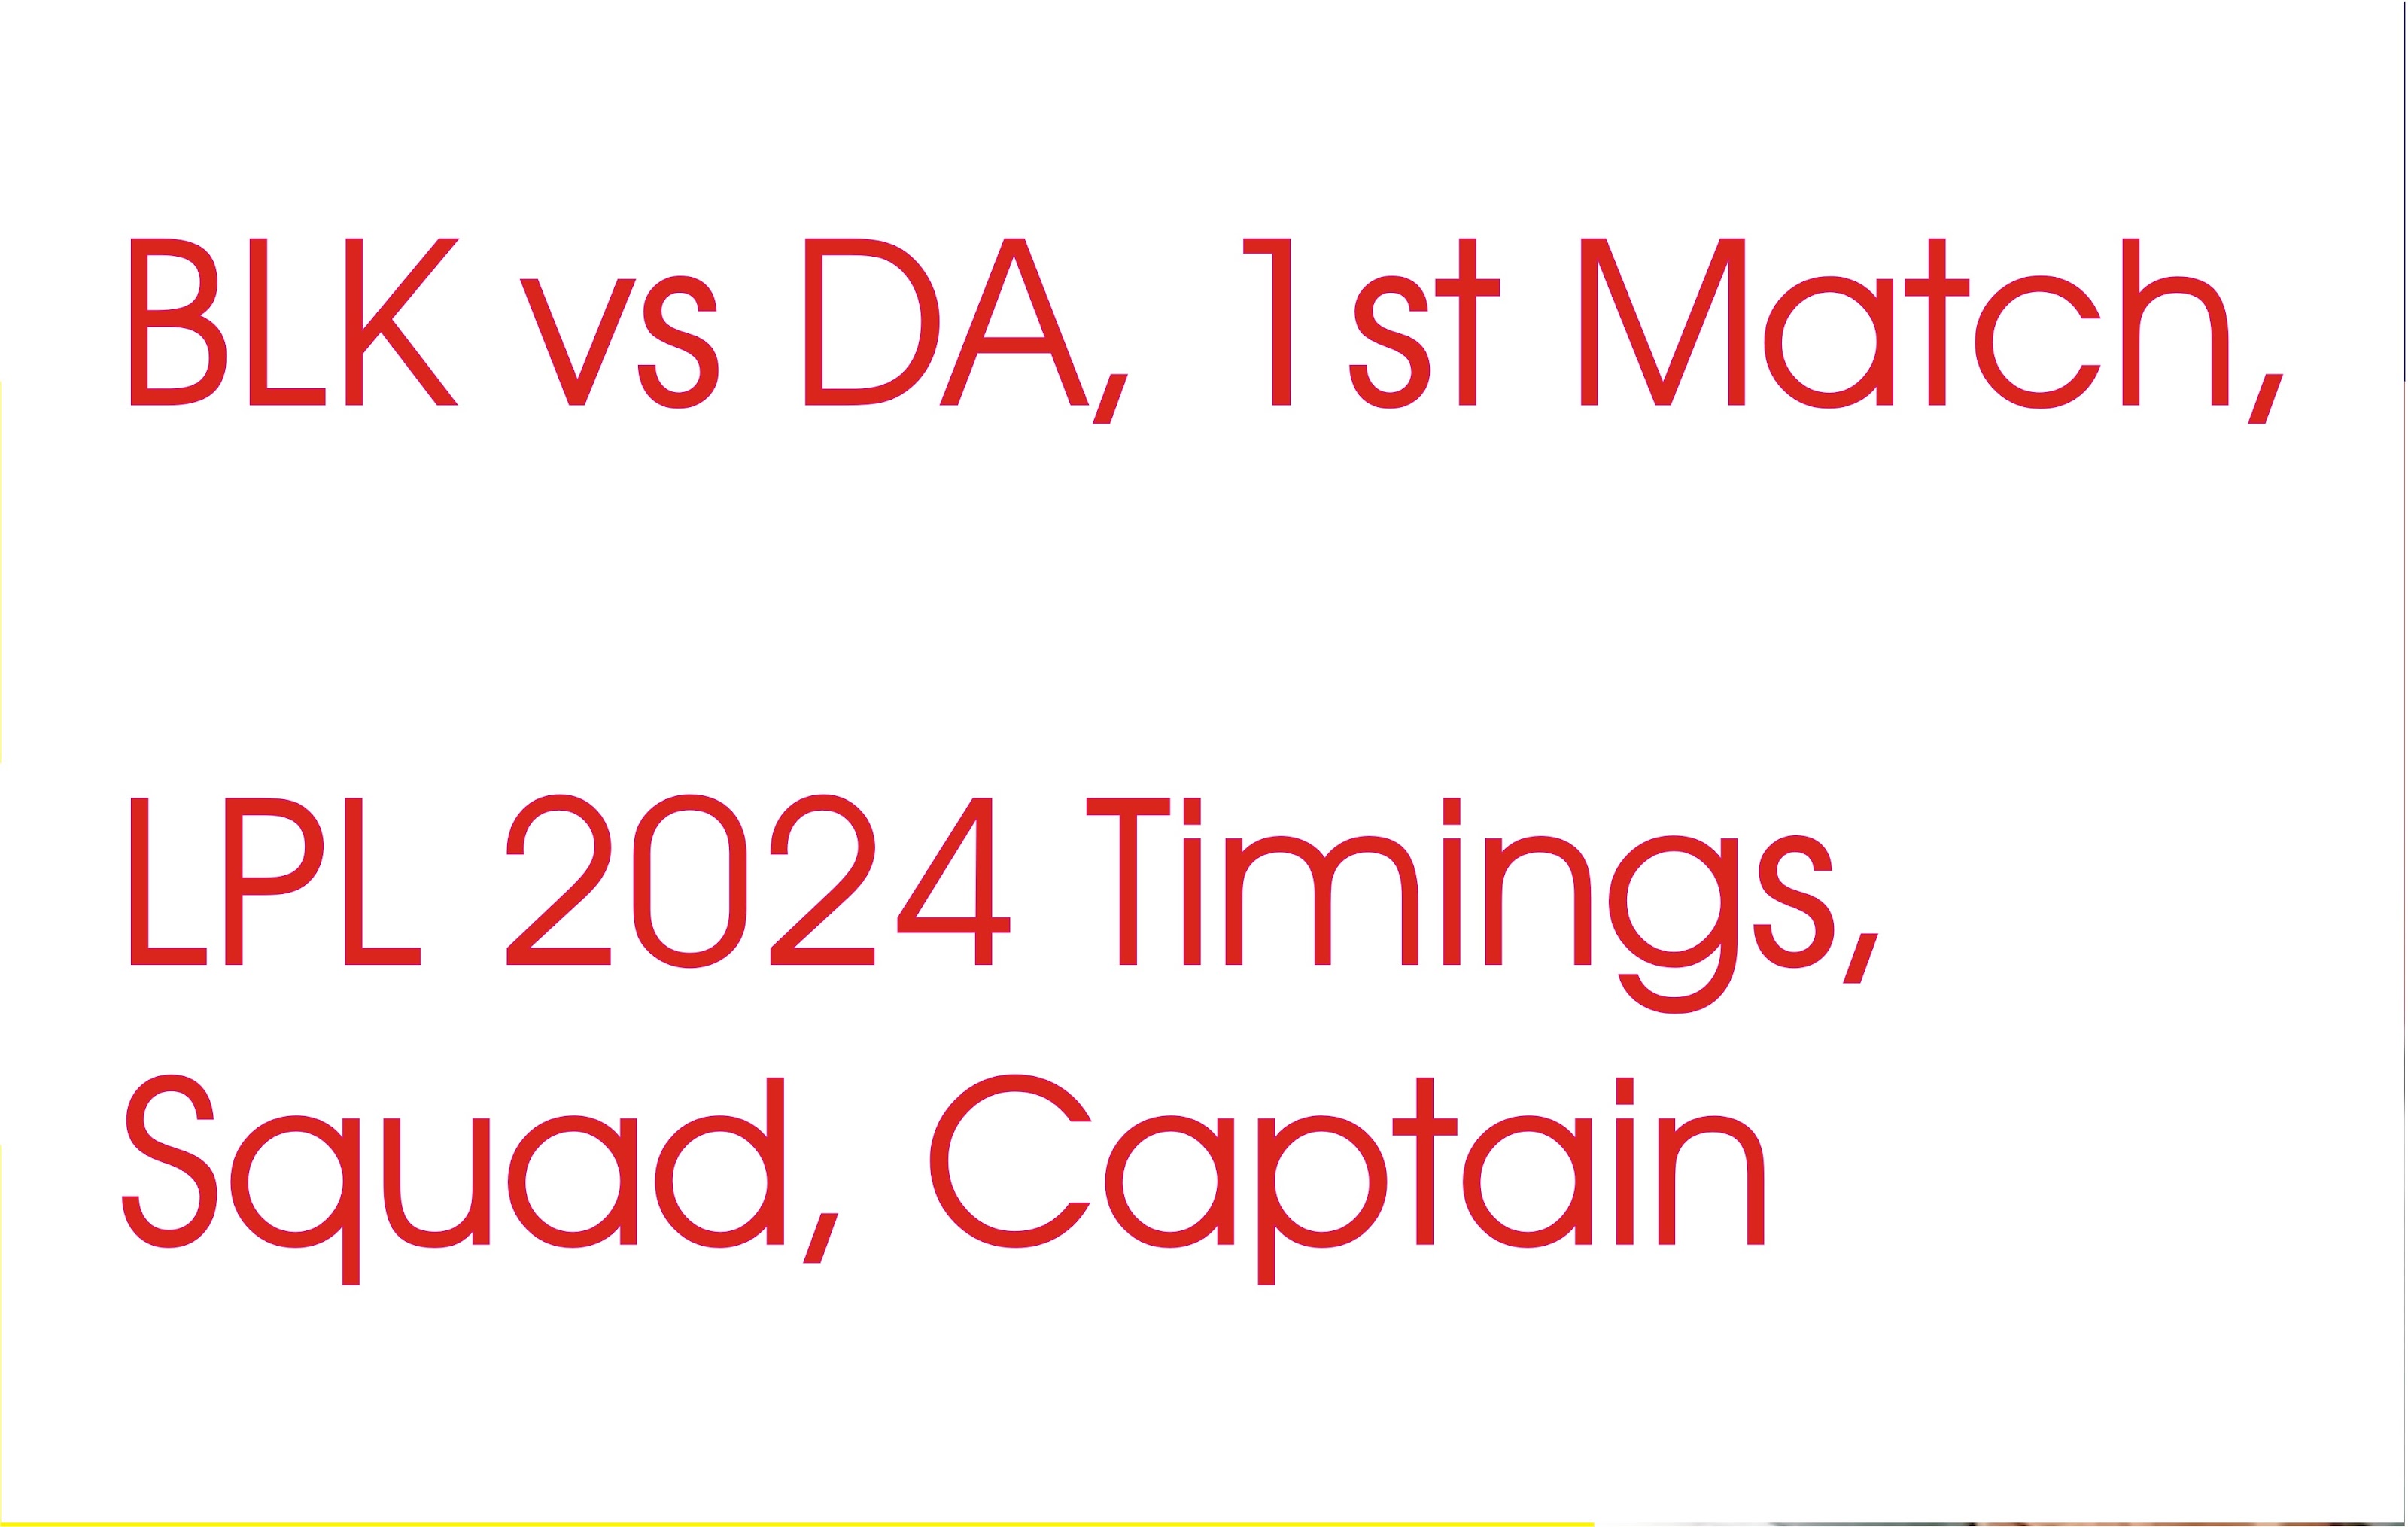 BLK vs DA, 1st Match, LPL 2024 Timings, Squad, Captain